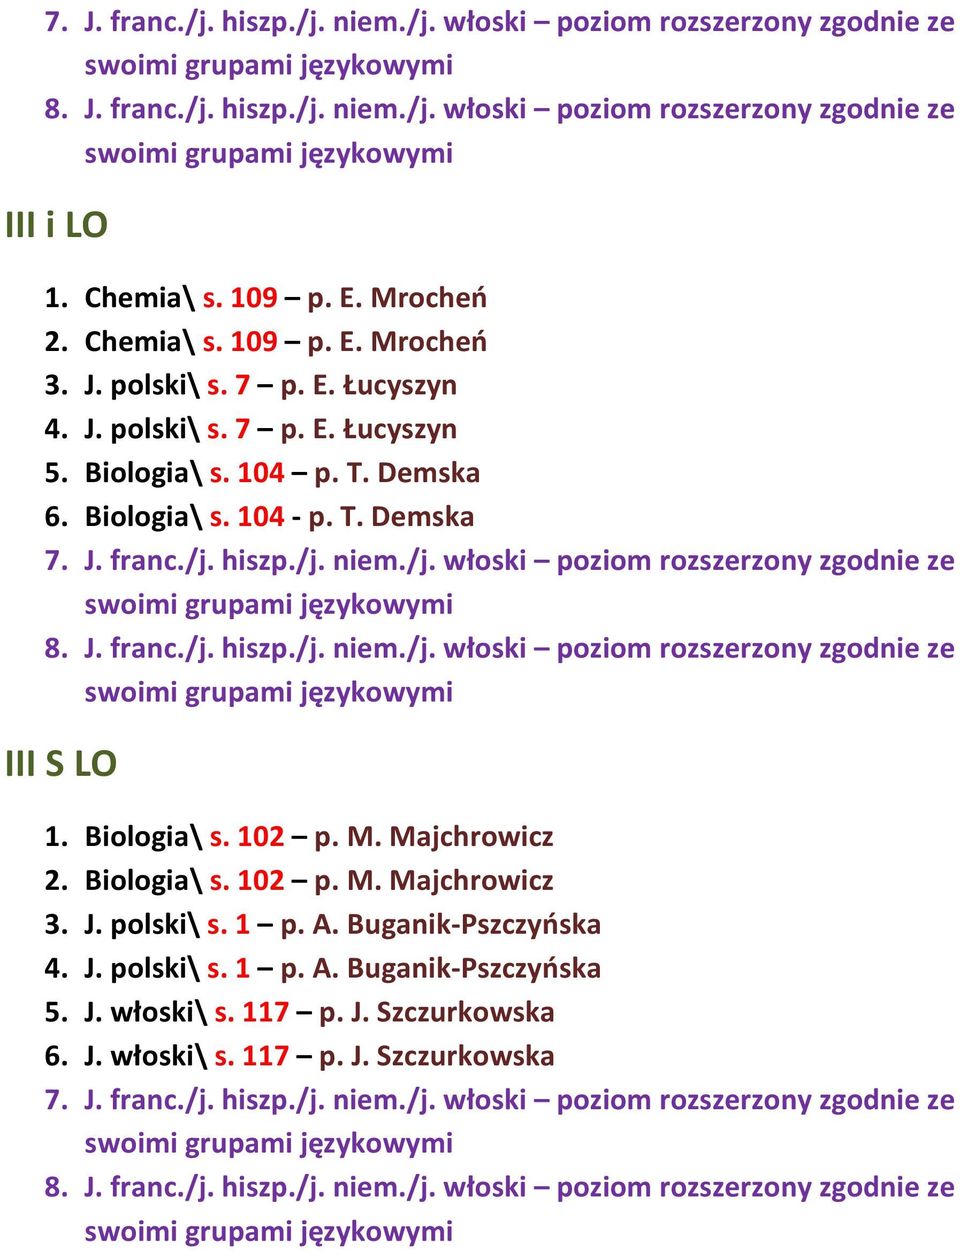 Biologia\ s. 102 p. M. Majchrowicz 3. J. polski\ s. 1 p. A. Buganik-Pszczyńska 4. J. polski\ s. 1 p. A. Buganik-Pszczyńska 5.